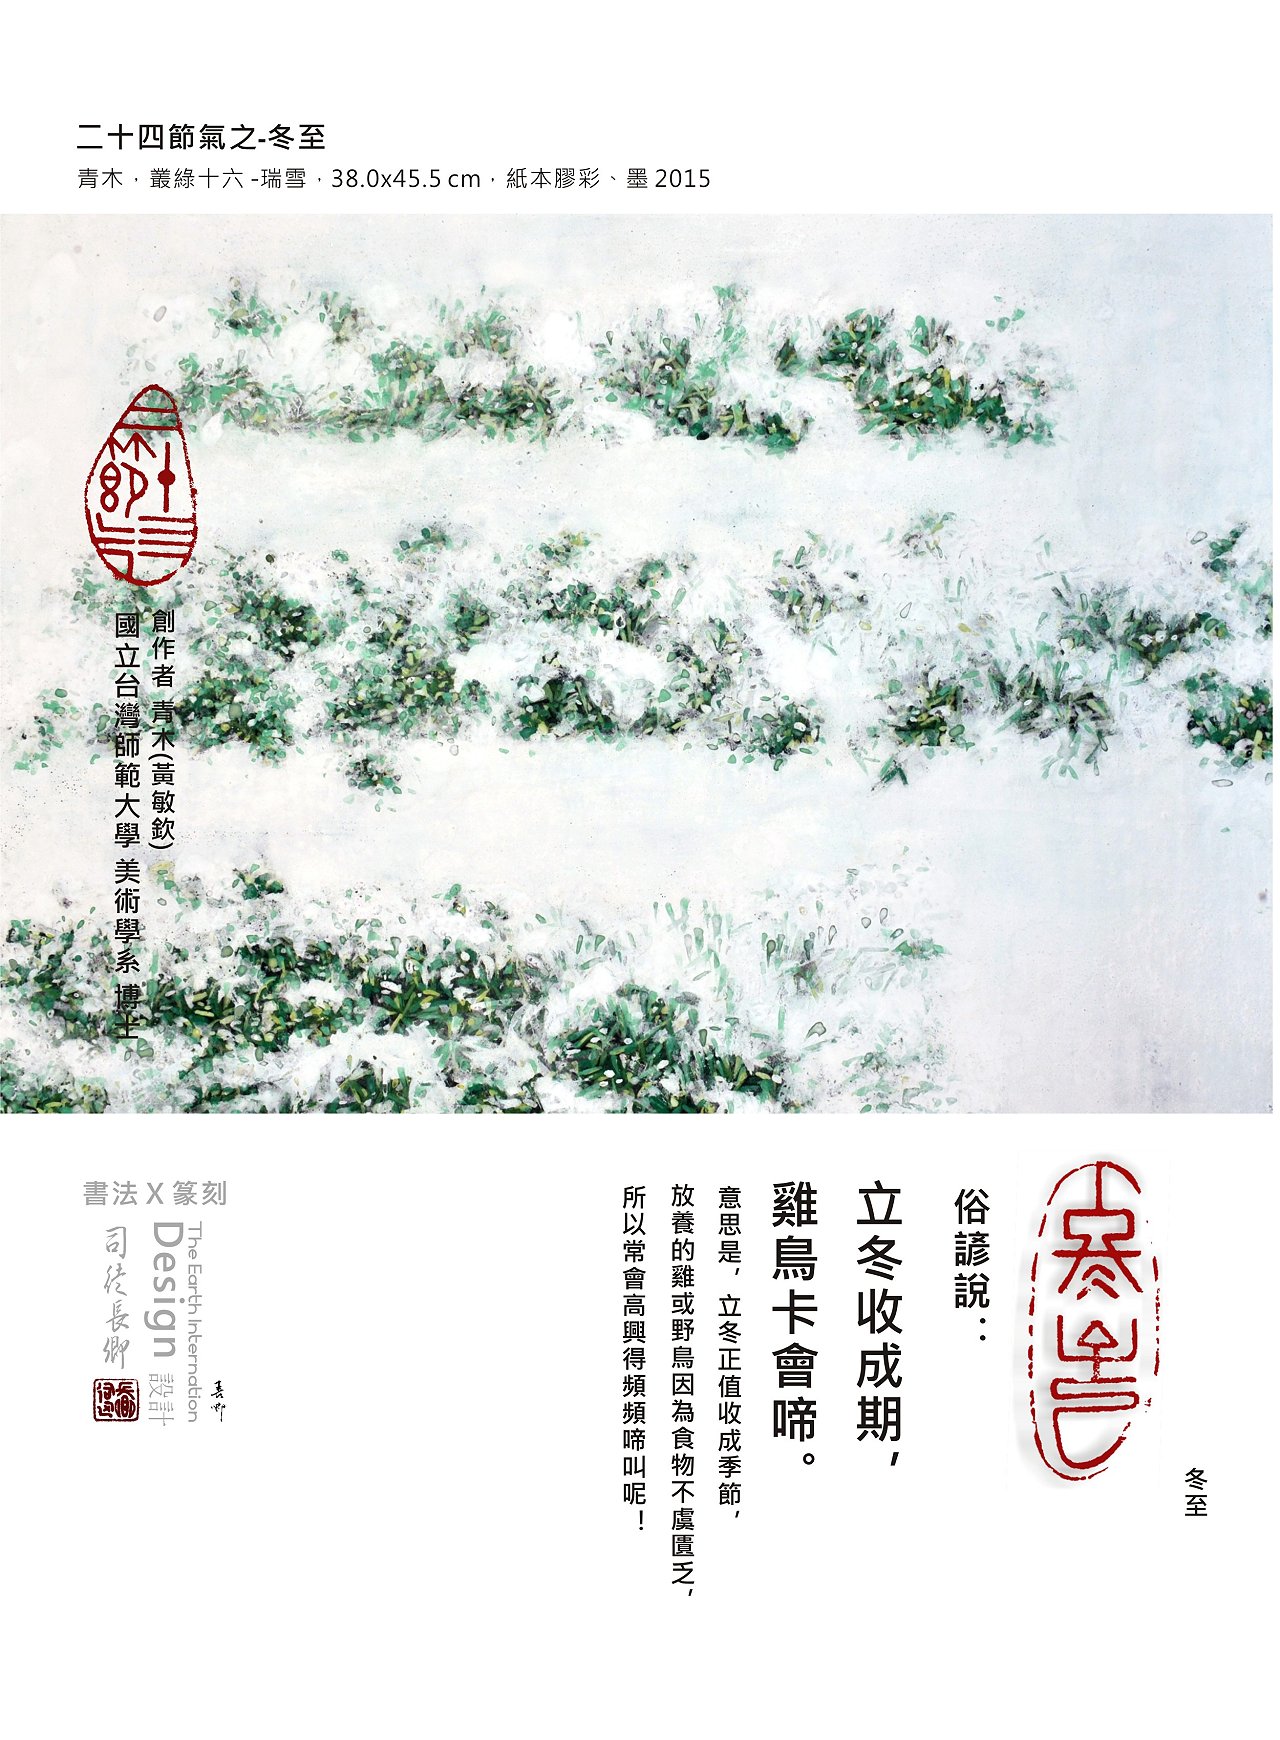 青木(黃敏欽)，叢綠十六 -瑞雪，38.0x45.5 cm，紙本膠彩、墨 2015  